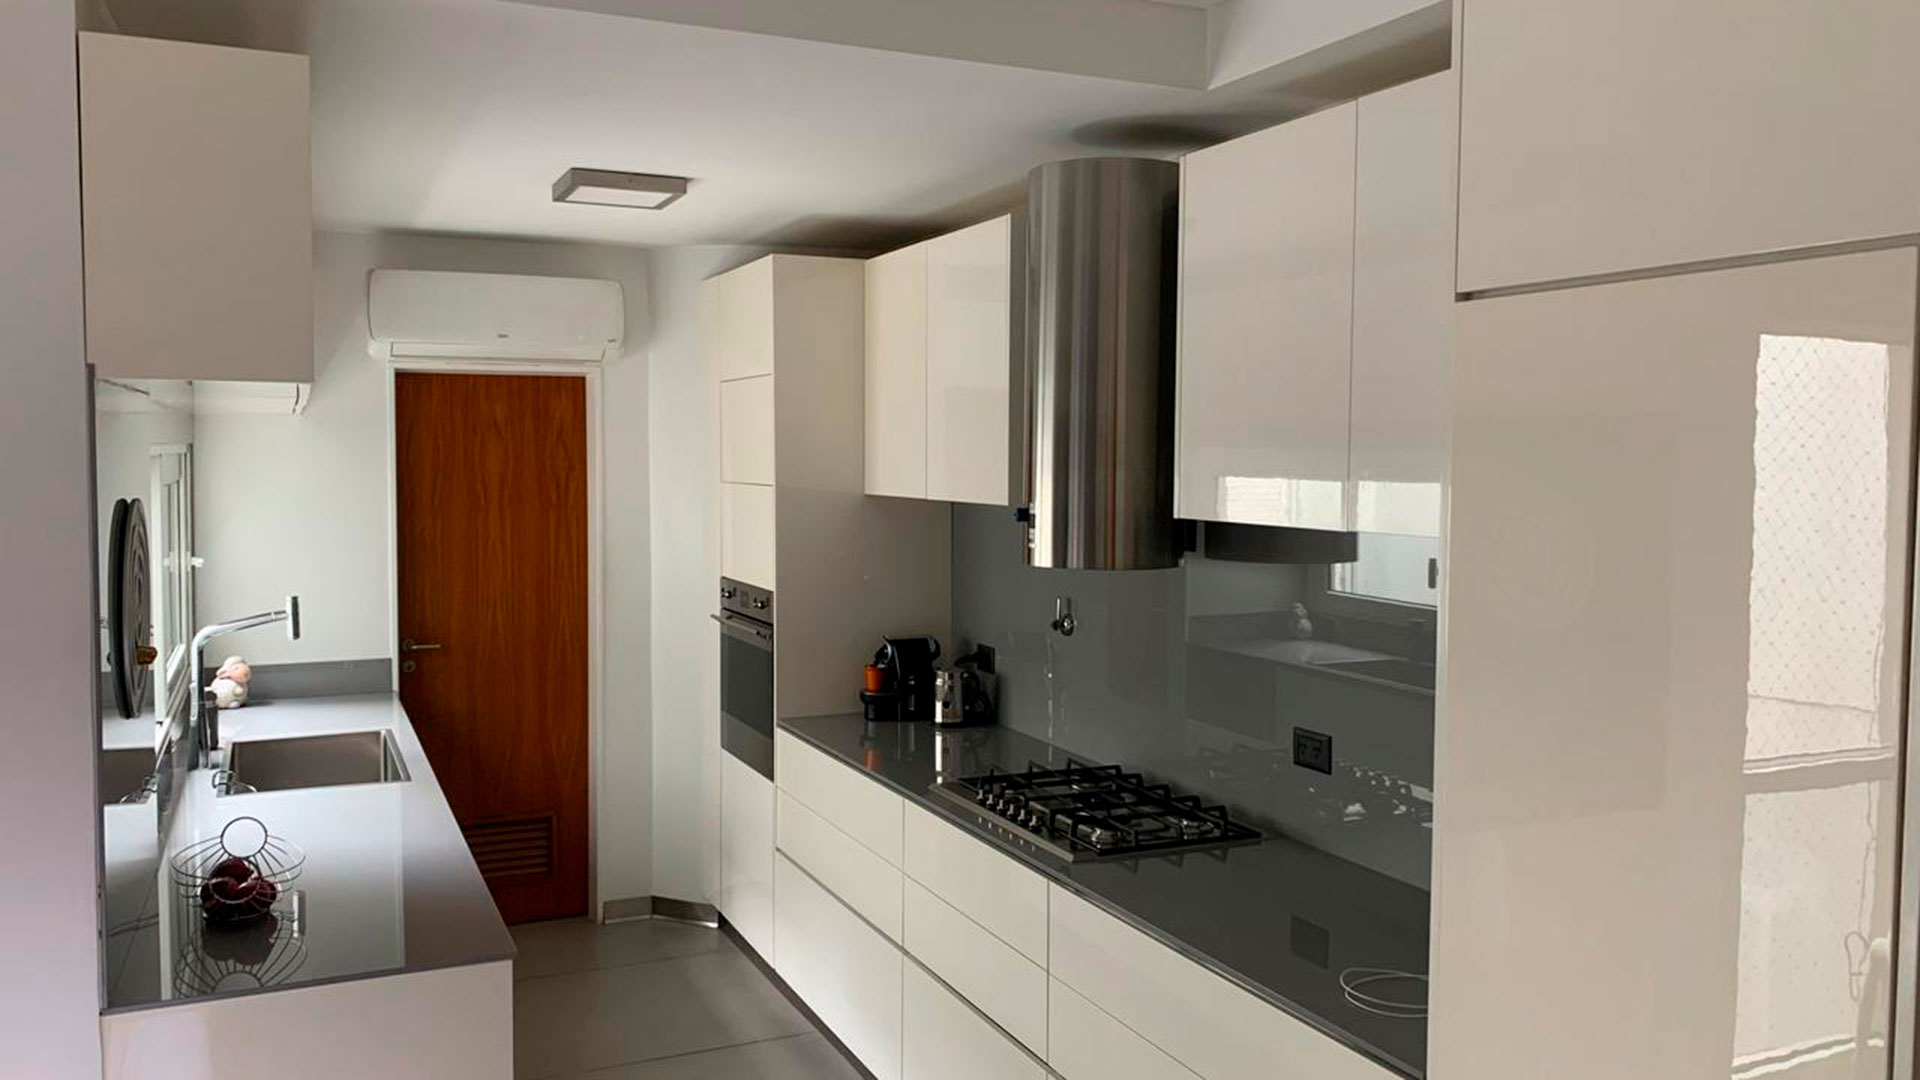 En los departamentos de menor superficie suelen empotrarse los muebles de cocina para aprovechar mejor el espacio existente